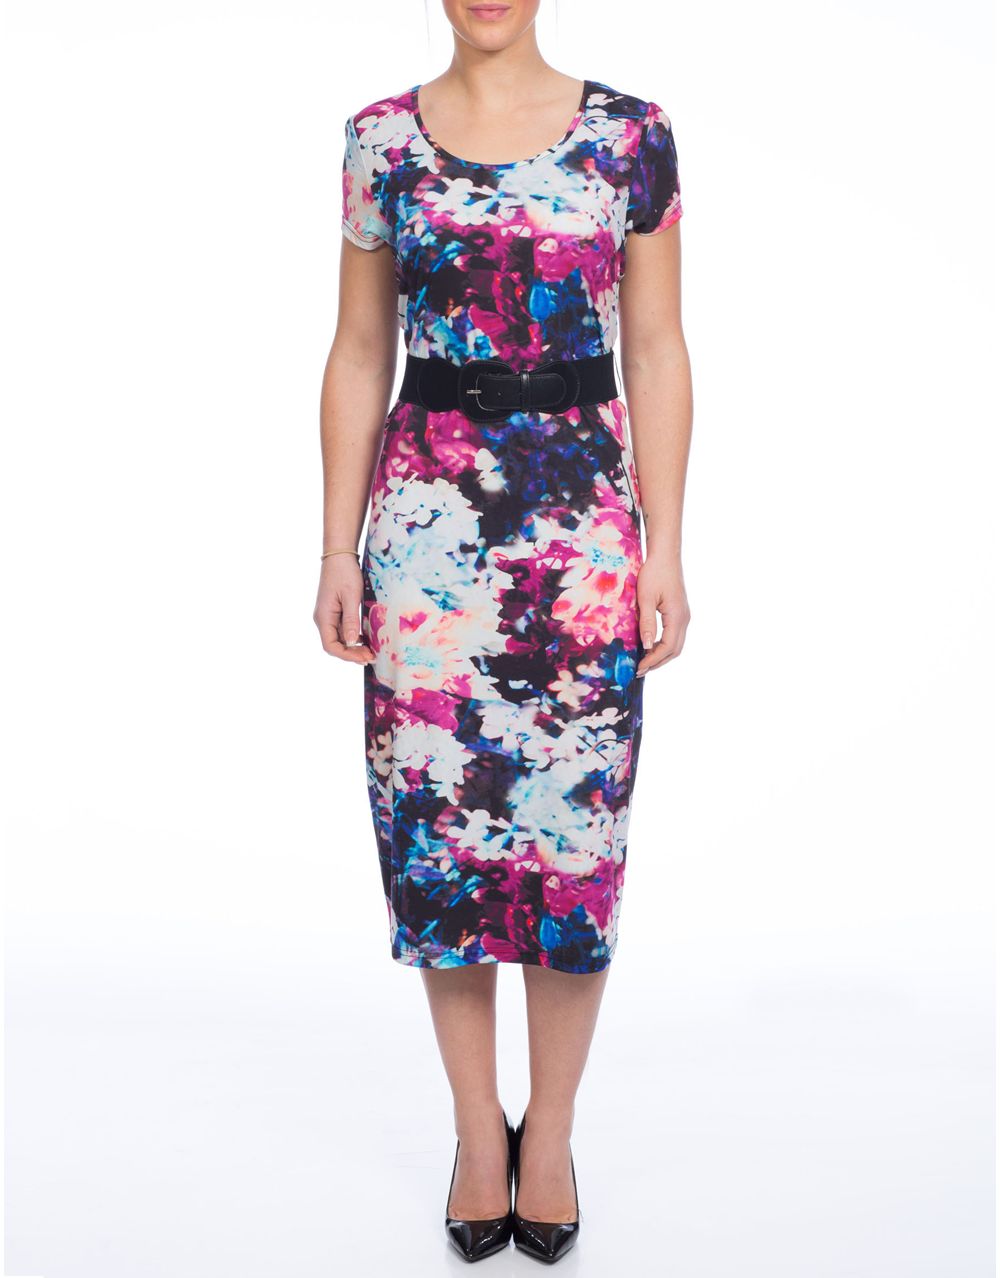 Blur Floral Print Dress